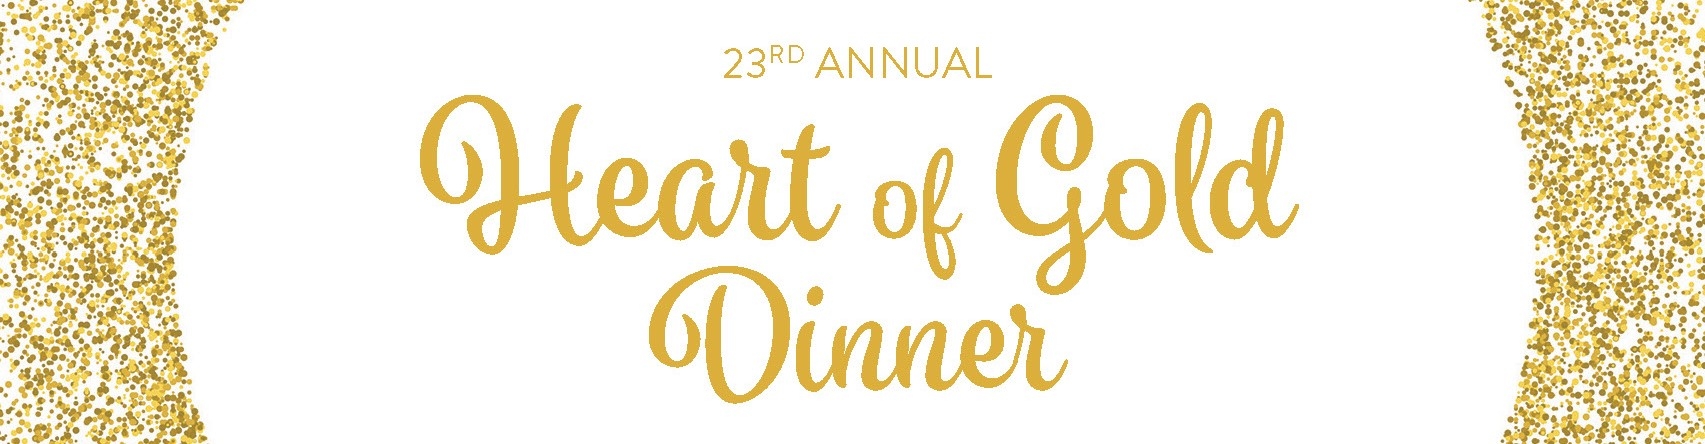 Heart of Gold Dinner 2022